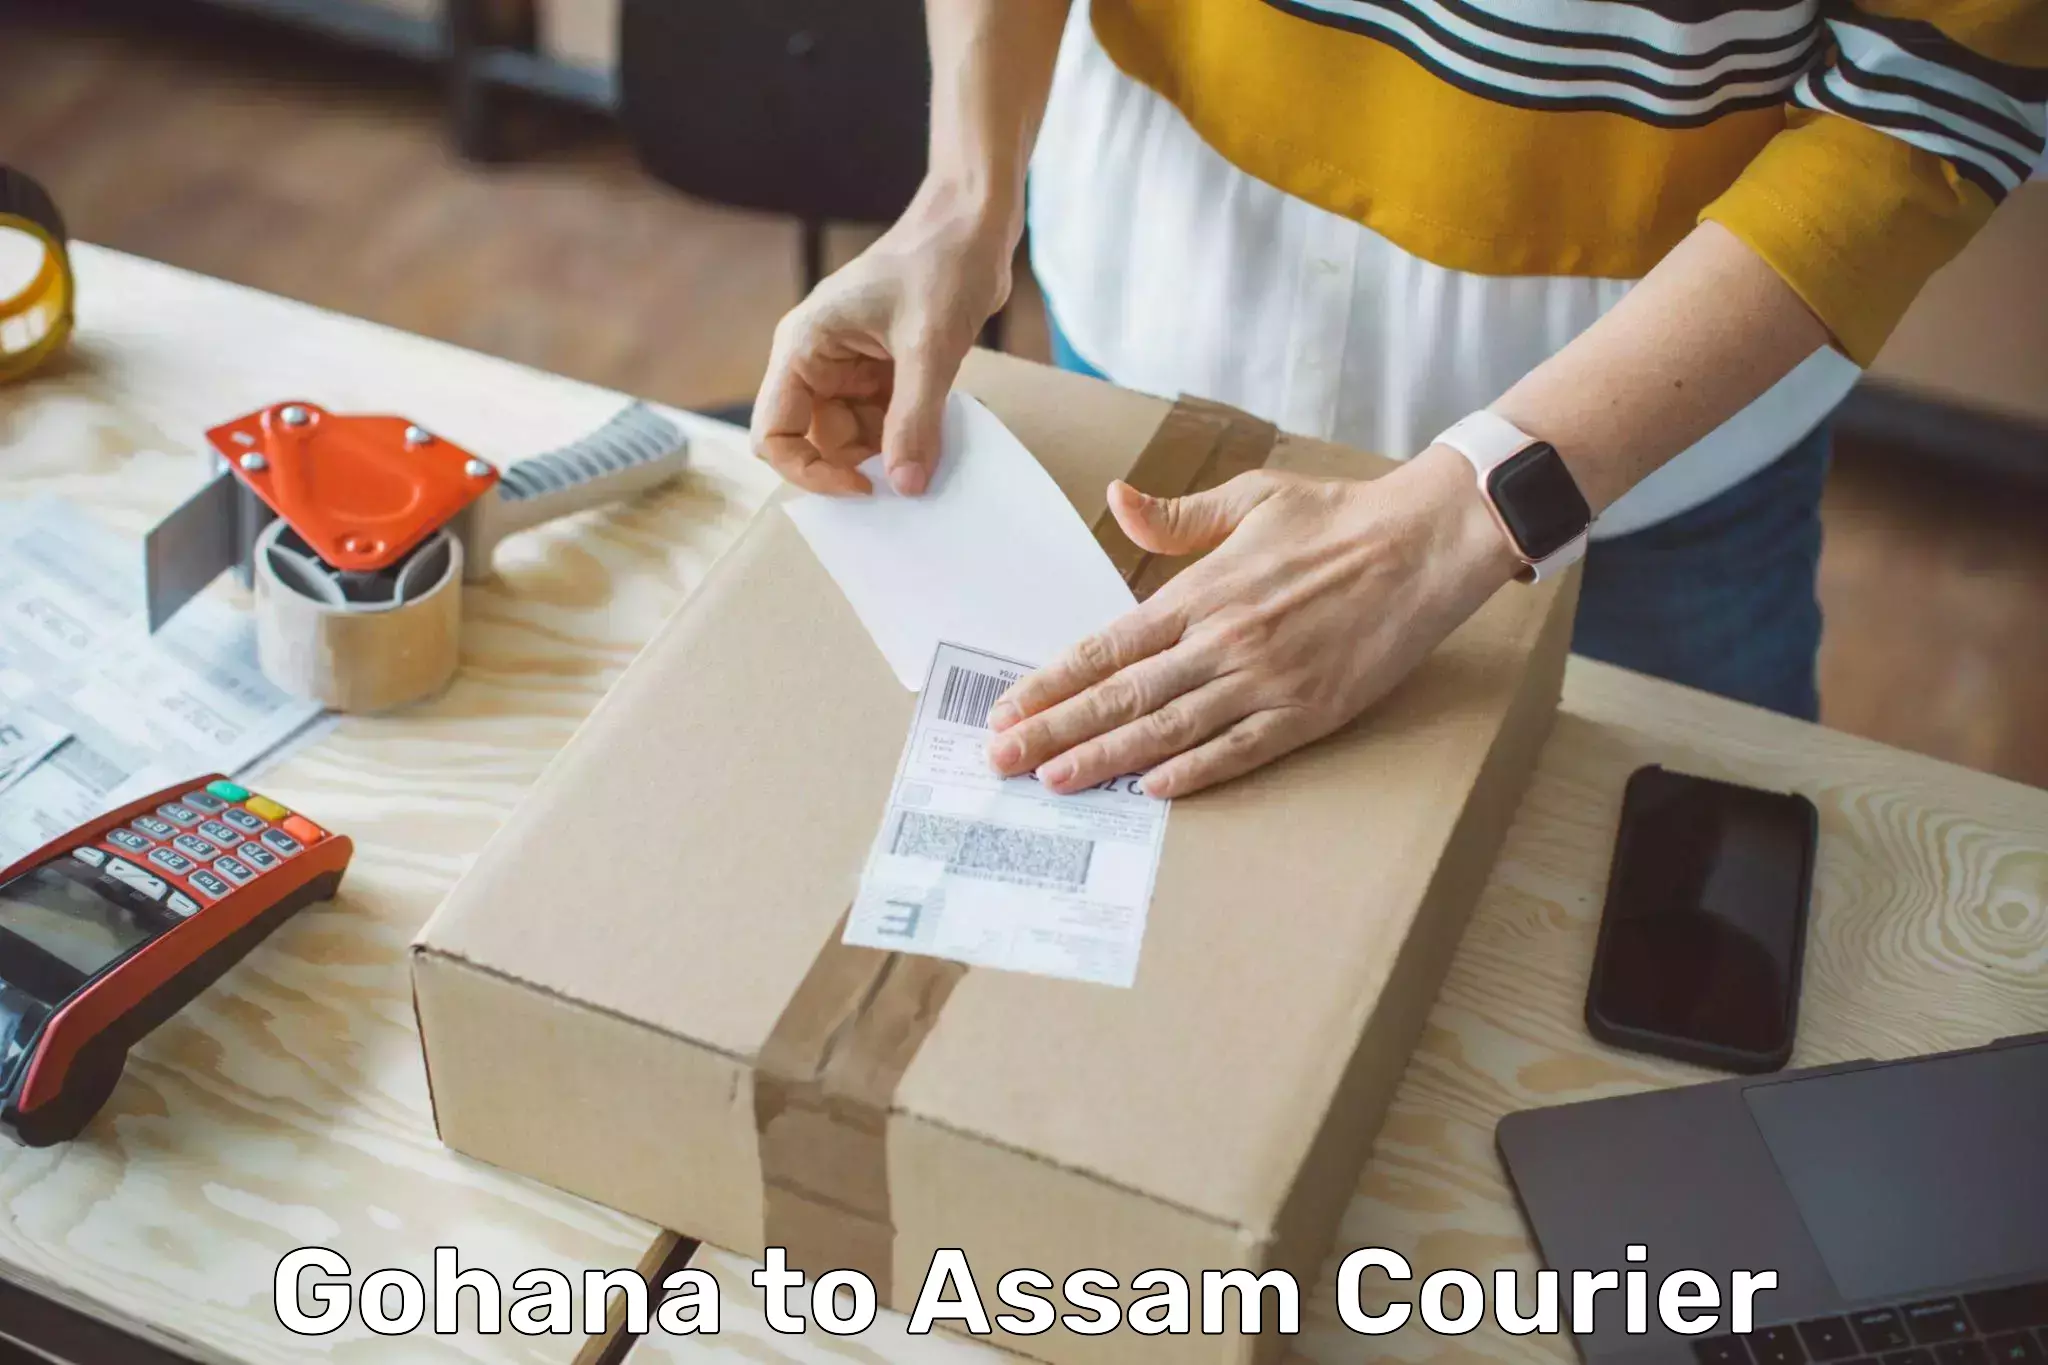 Modern courier technology Gohana to Assam